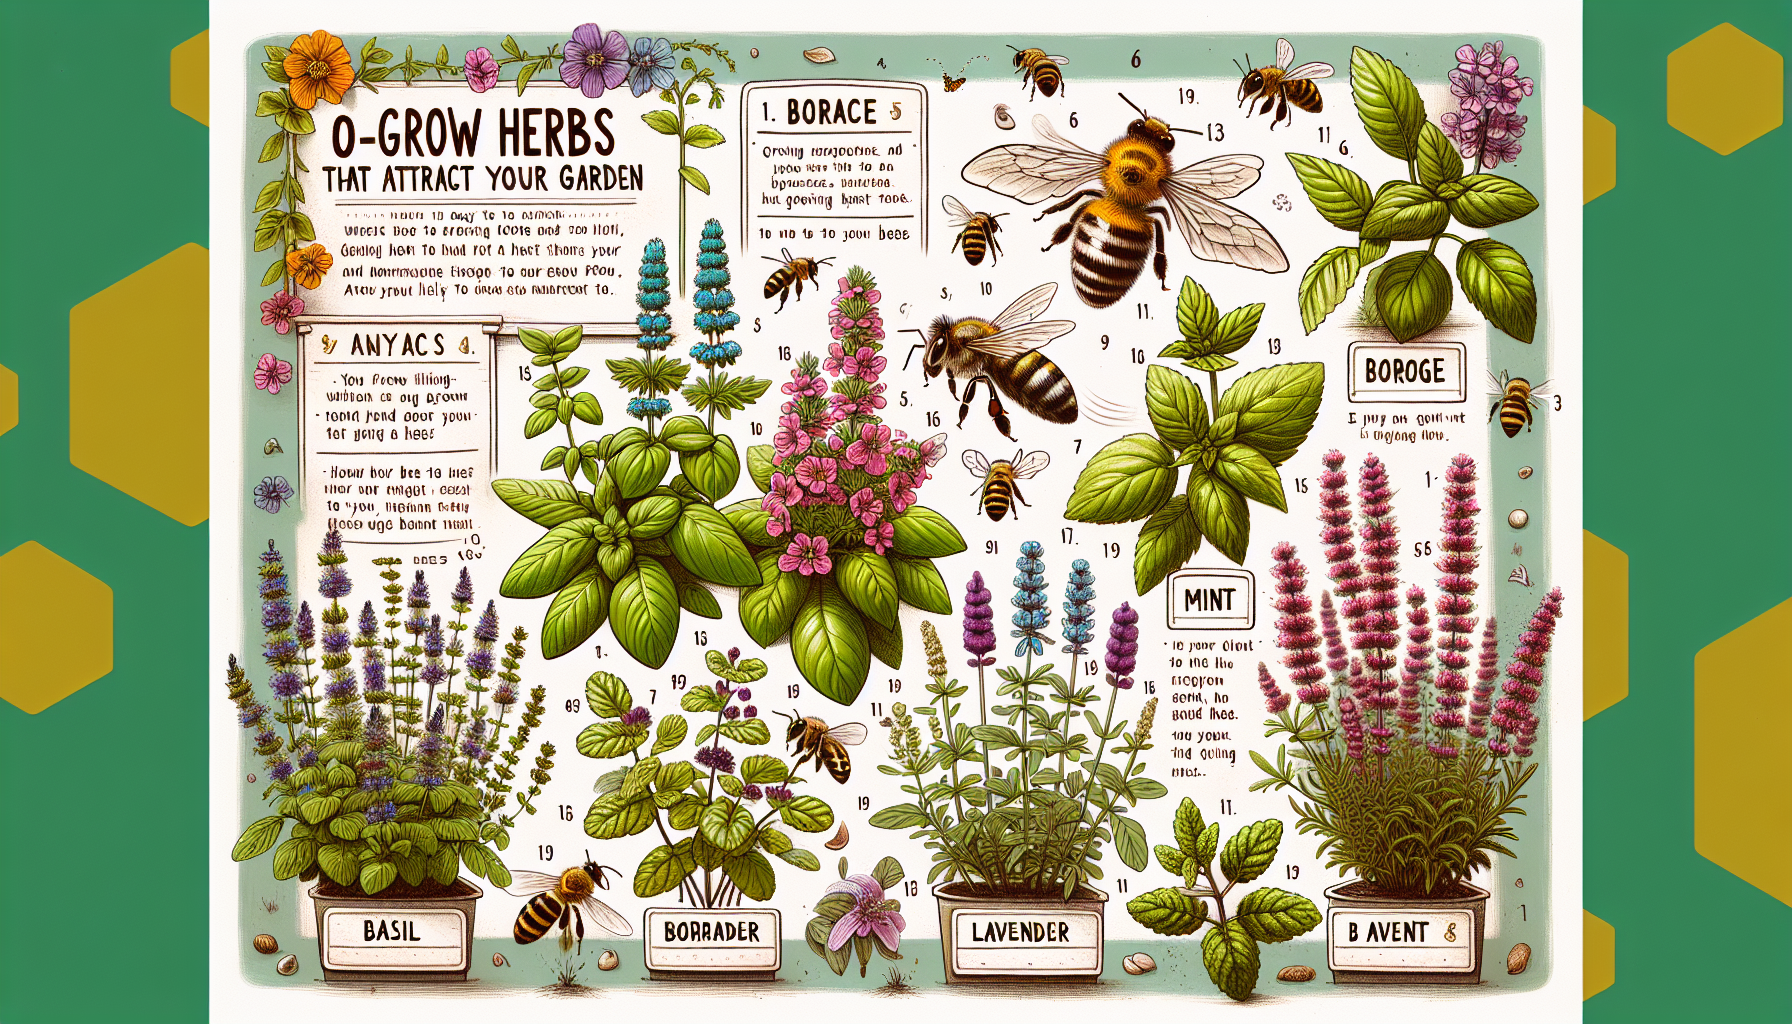 découvrez 10 herbes simples à cultiver pour attirer les abeilles dans votre jardin. apprenez comment cultiver ces herbes et favoriser la biodiversité dans votre espace extérieur.